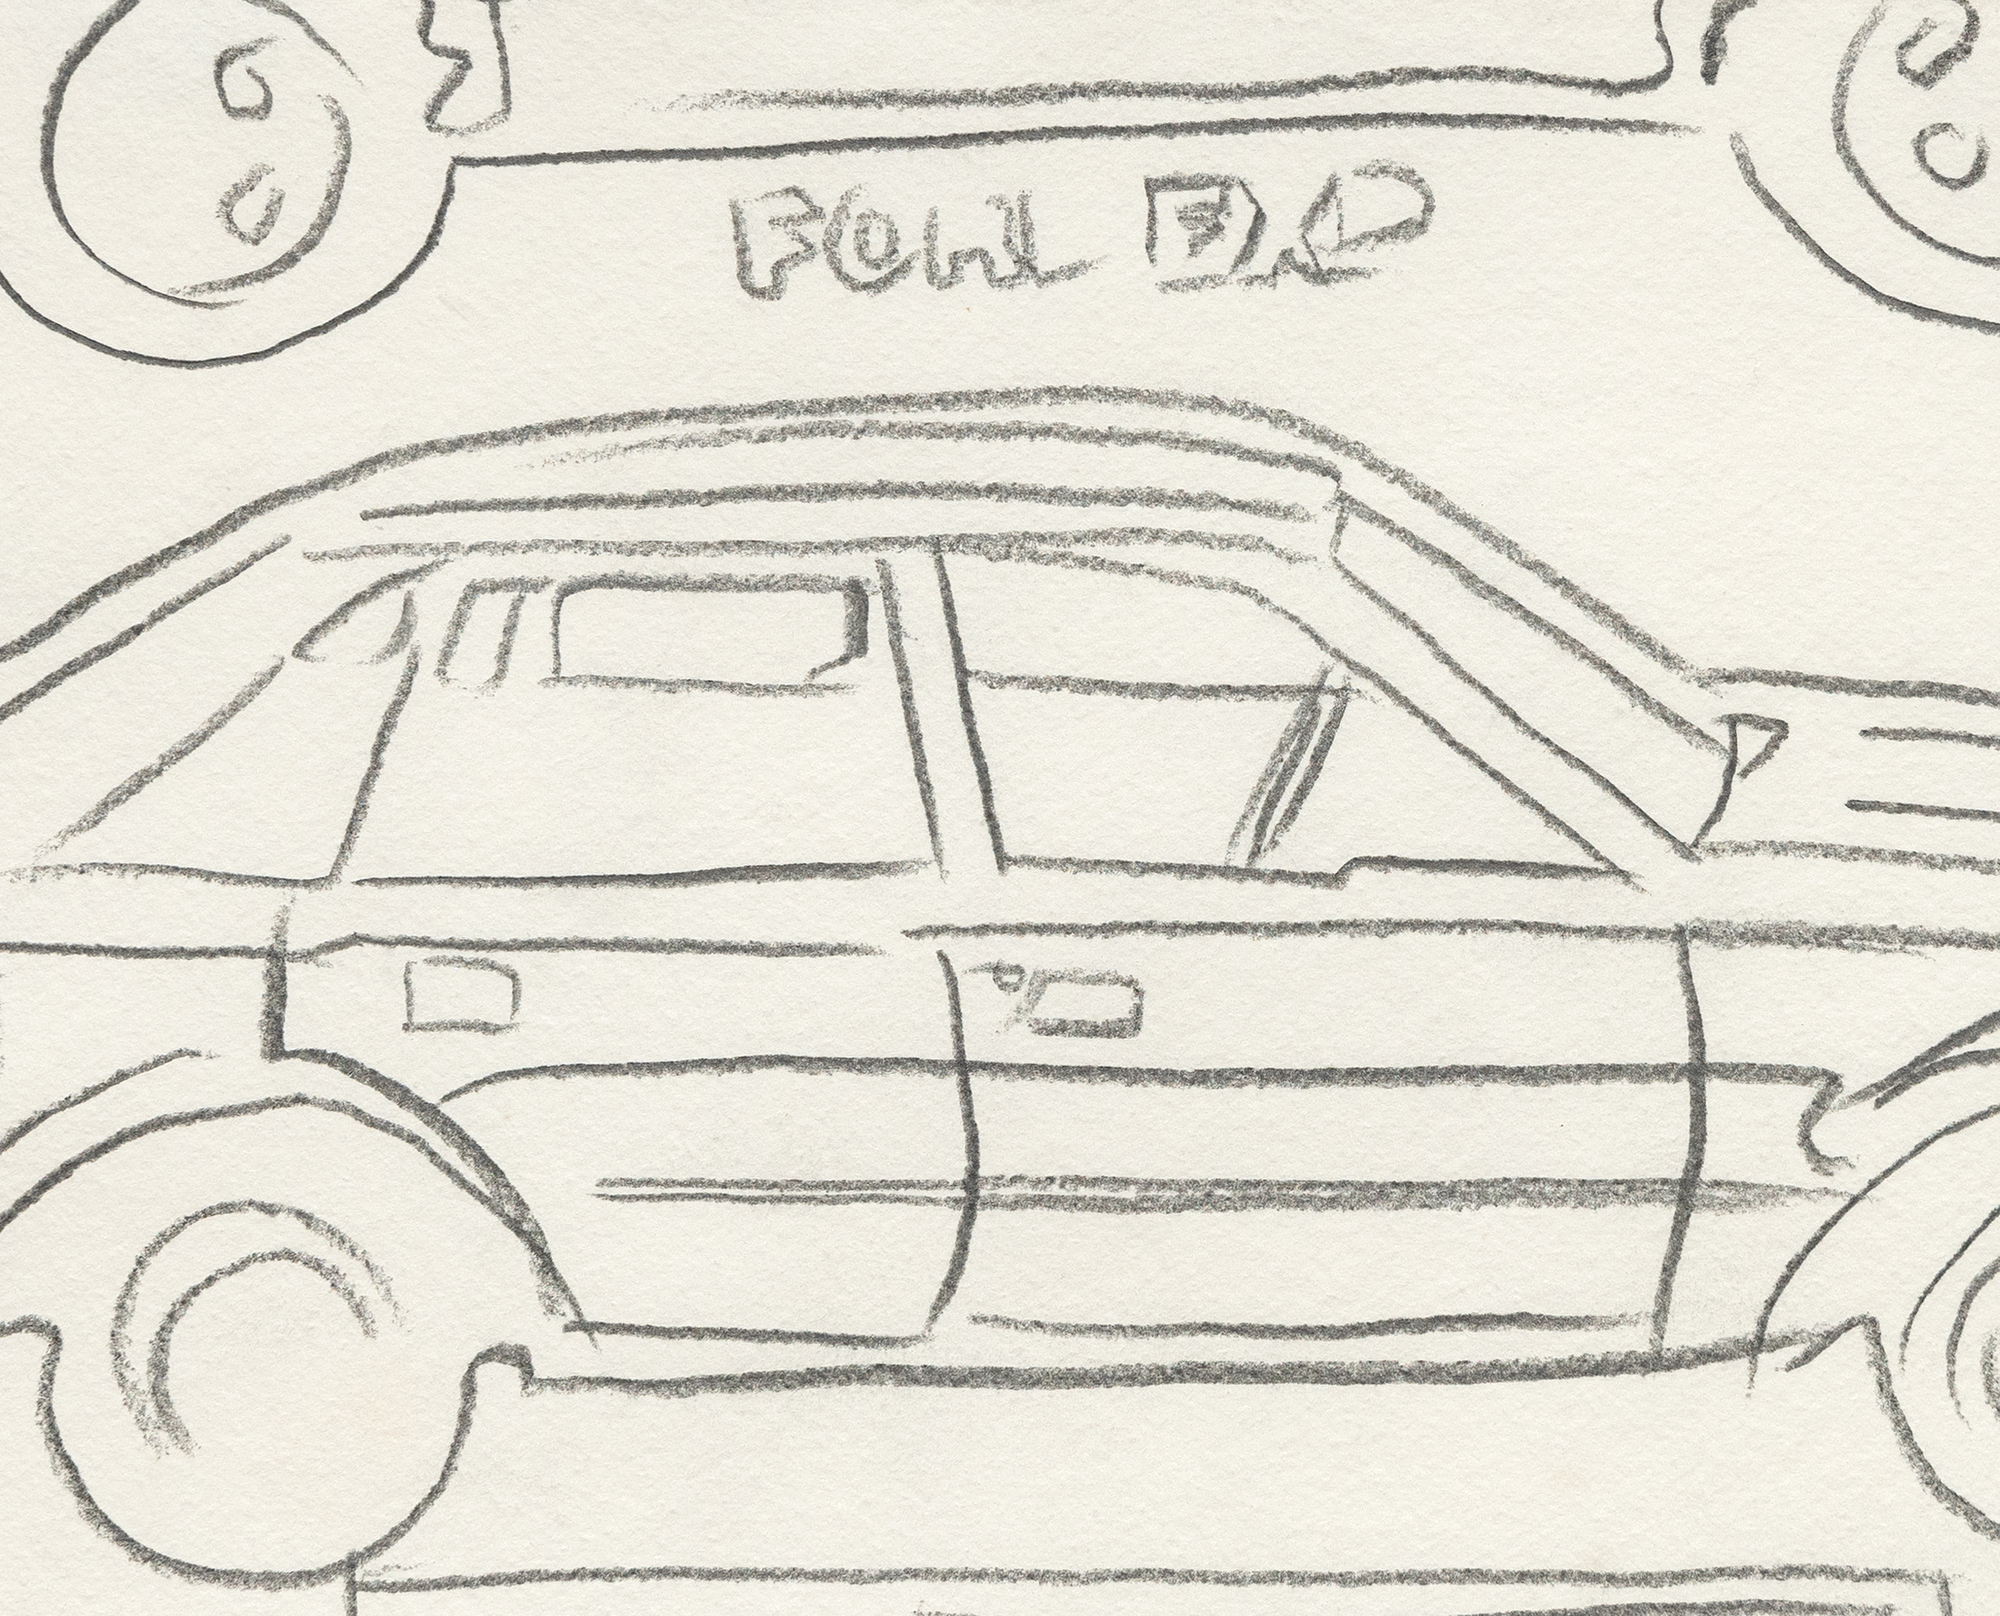 أندي وارهول - سيارة فورد - الجرافيت على الورق - 11 1/2 × 15 3/4 بوصة.